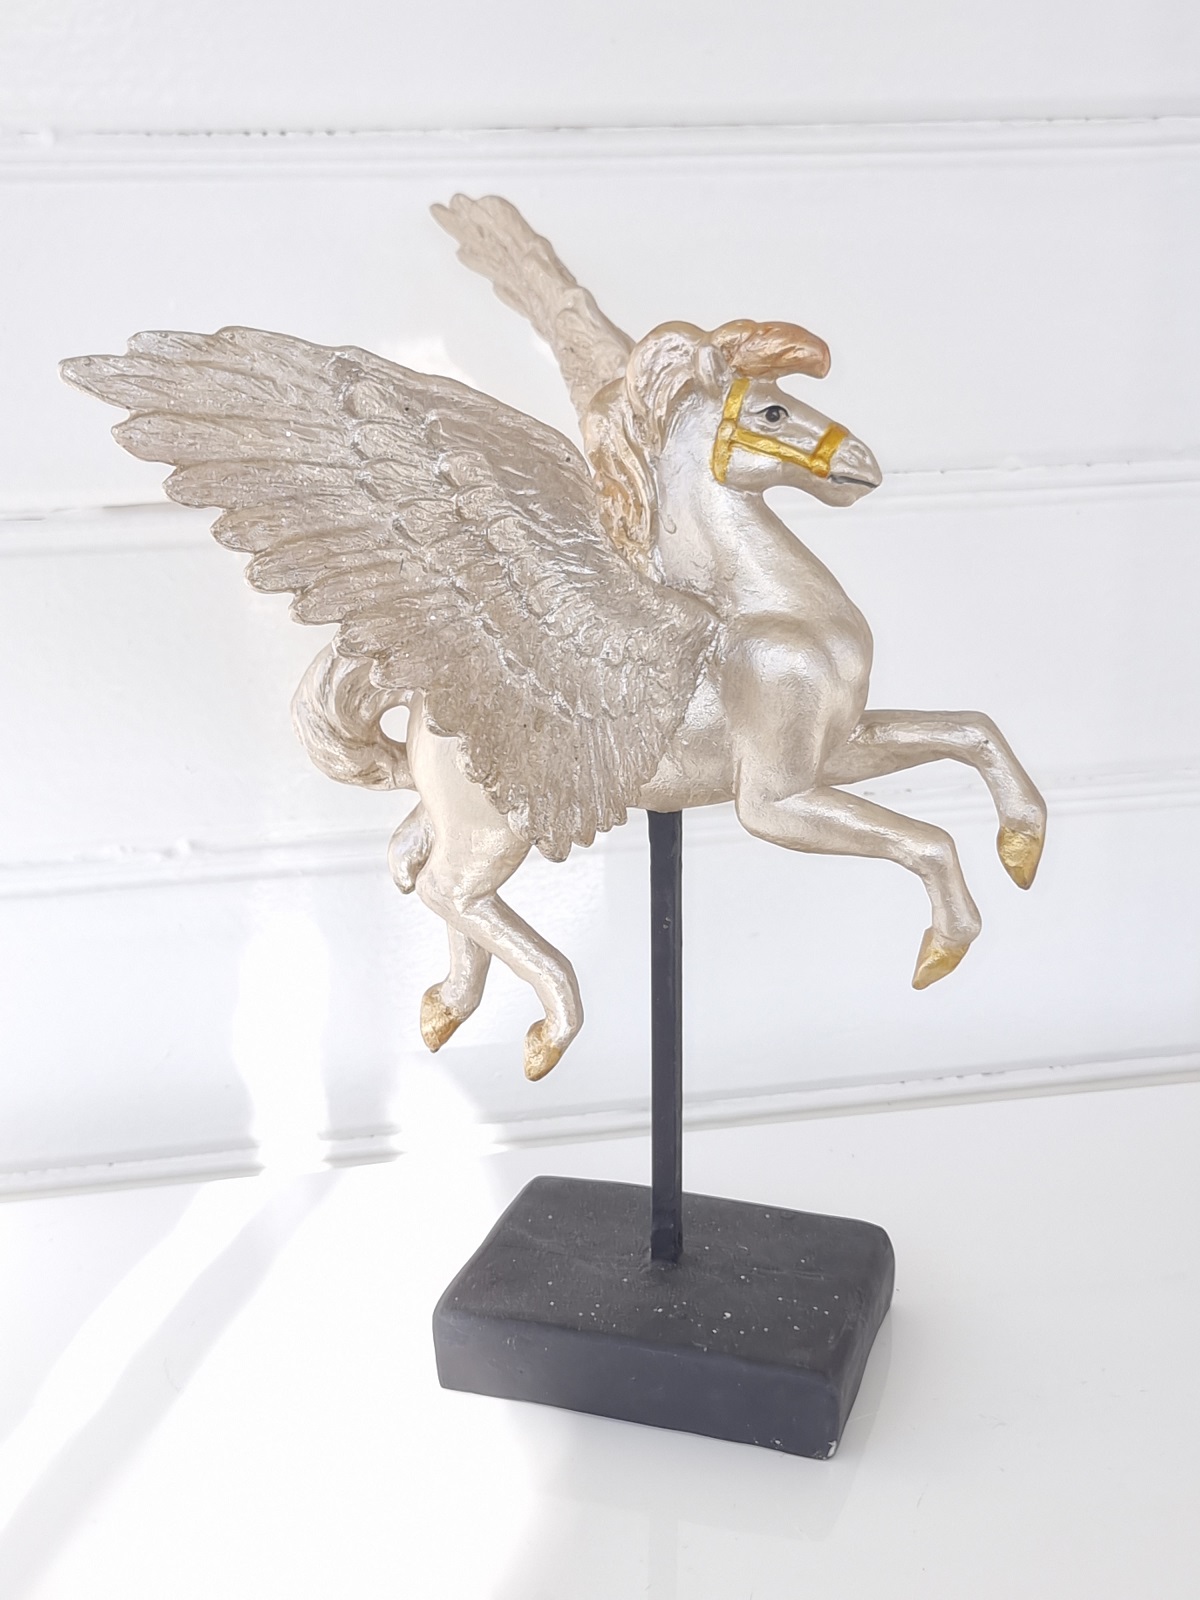 Pegasus häst med vingar för dekoration. Besök Blickfång.se